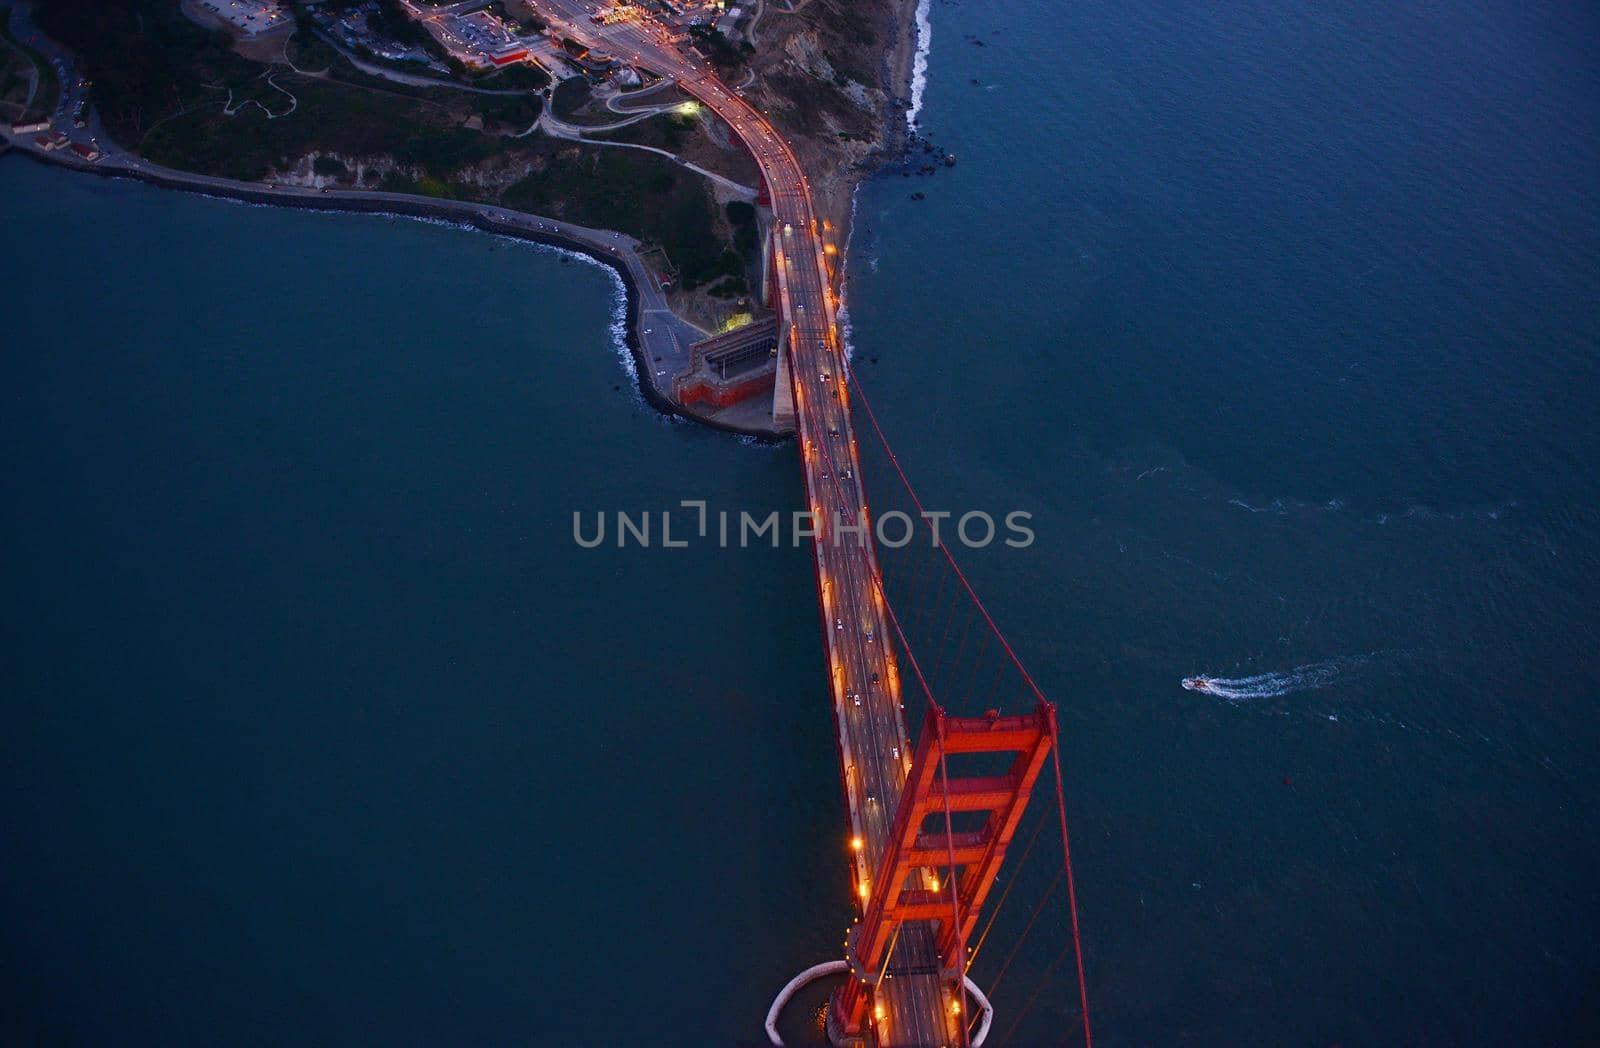 golden gate bridge aerial view by porbital